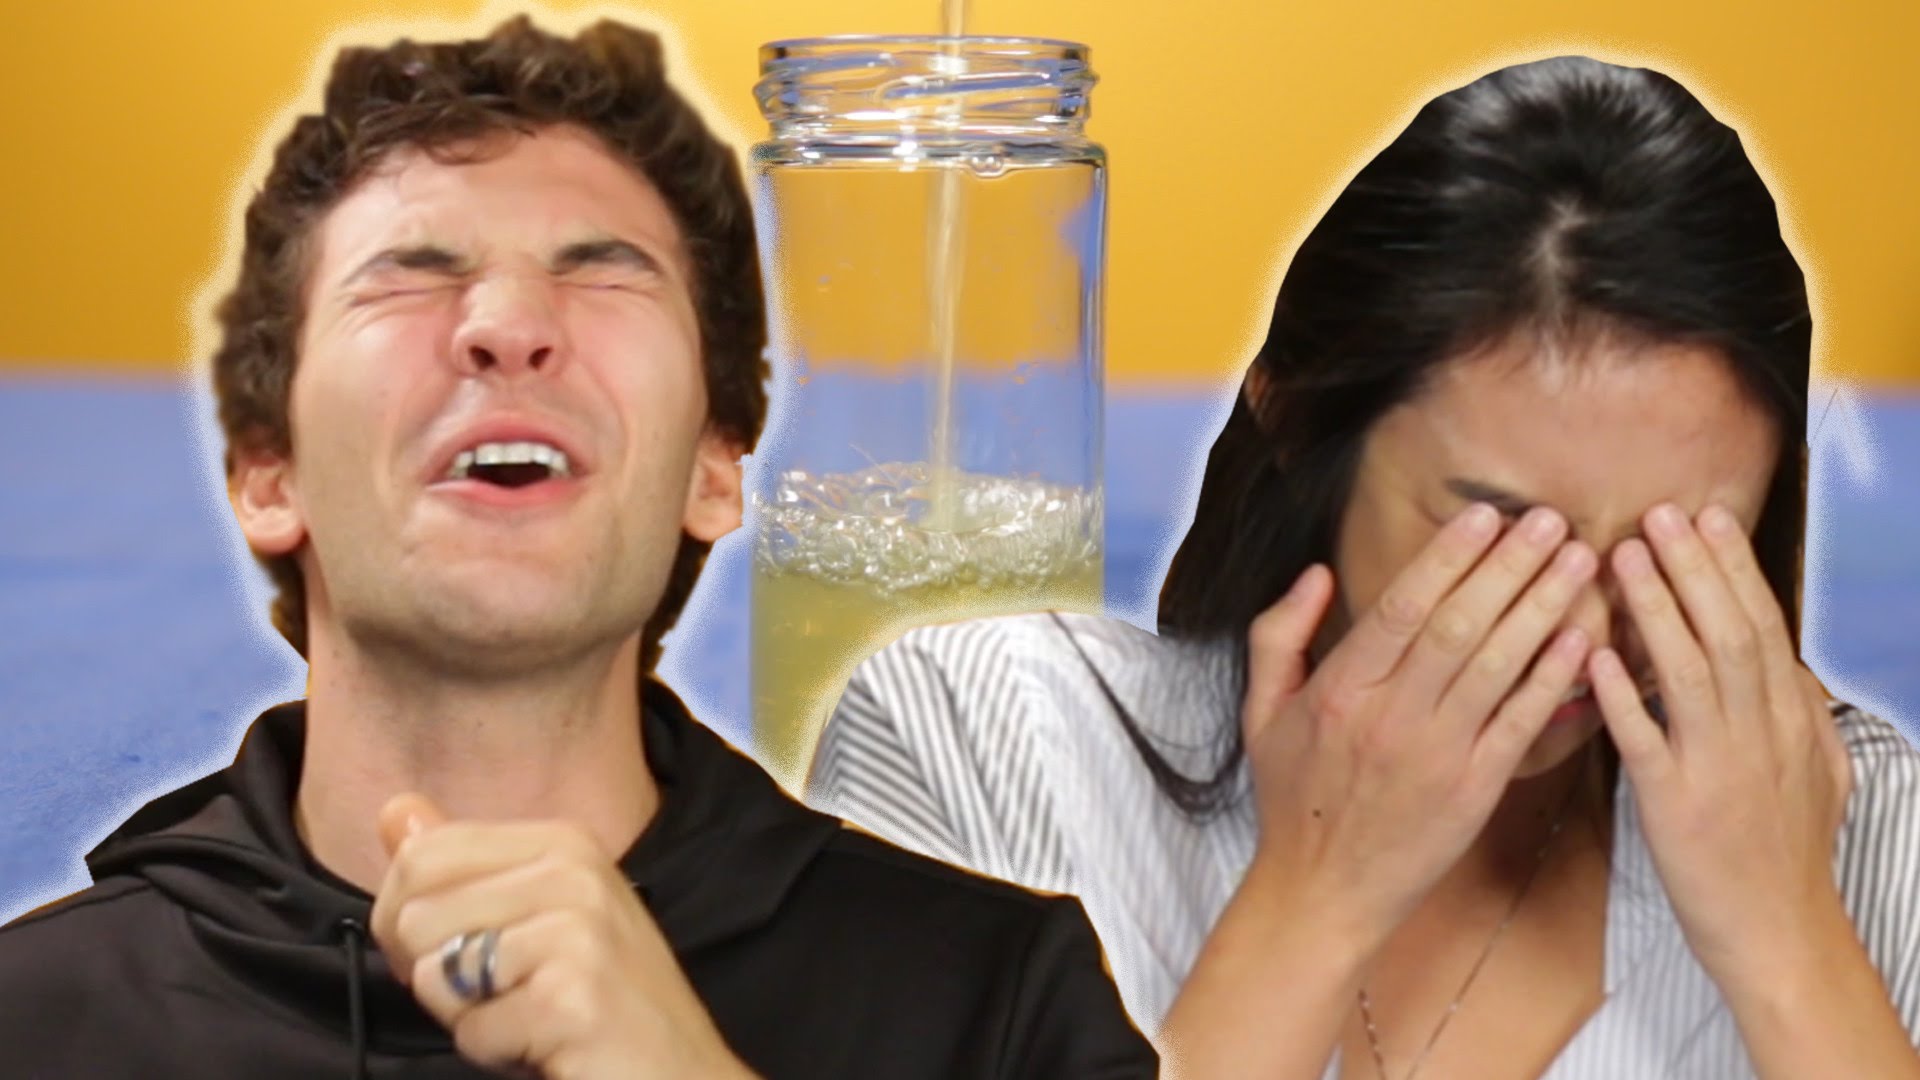 VIDEO: Inimesed üritavad esimest korda elus oma uriini juua